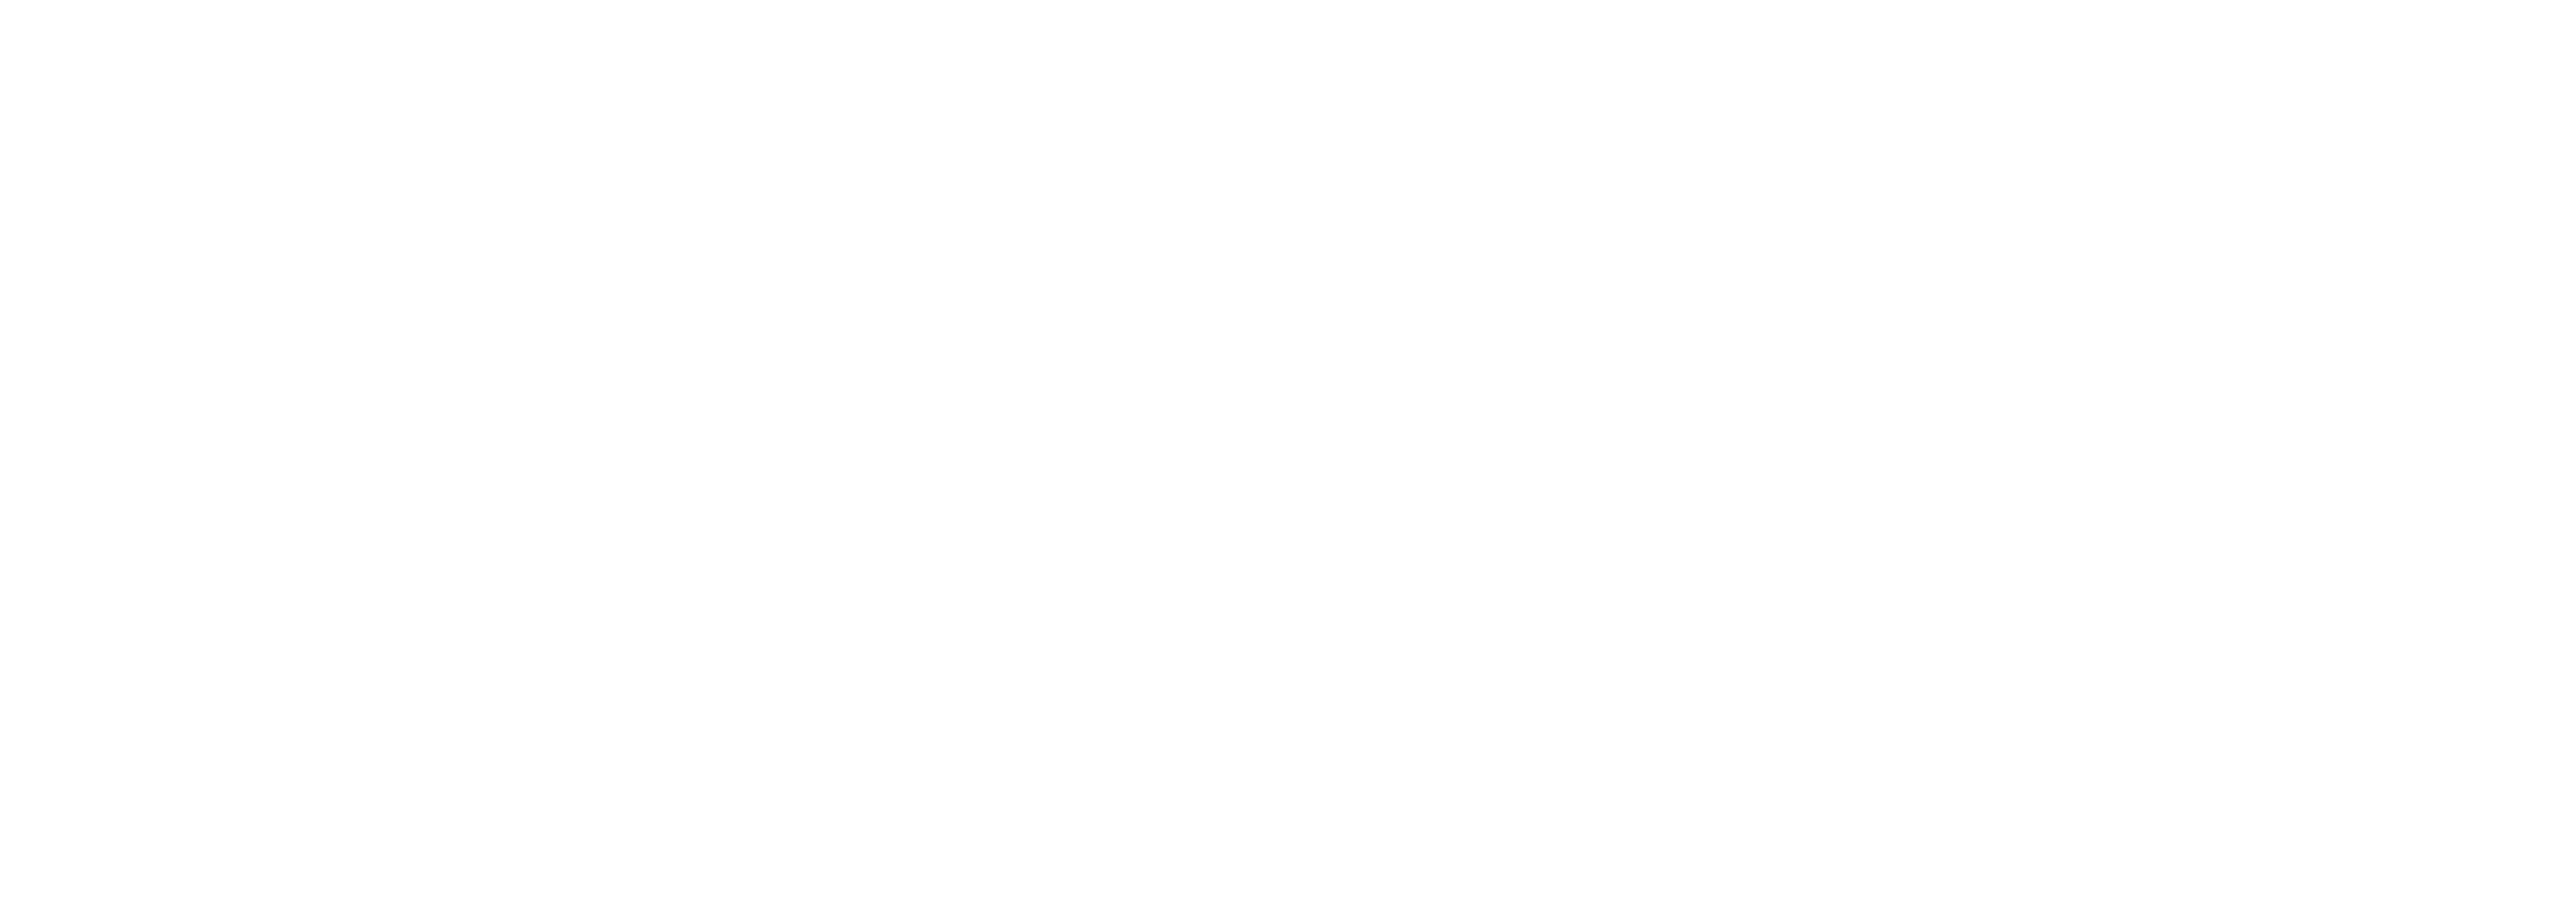 Active-citizens-fund_White@4x